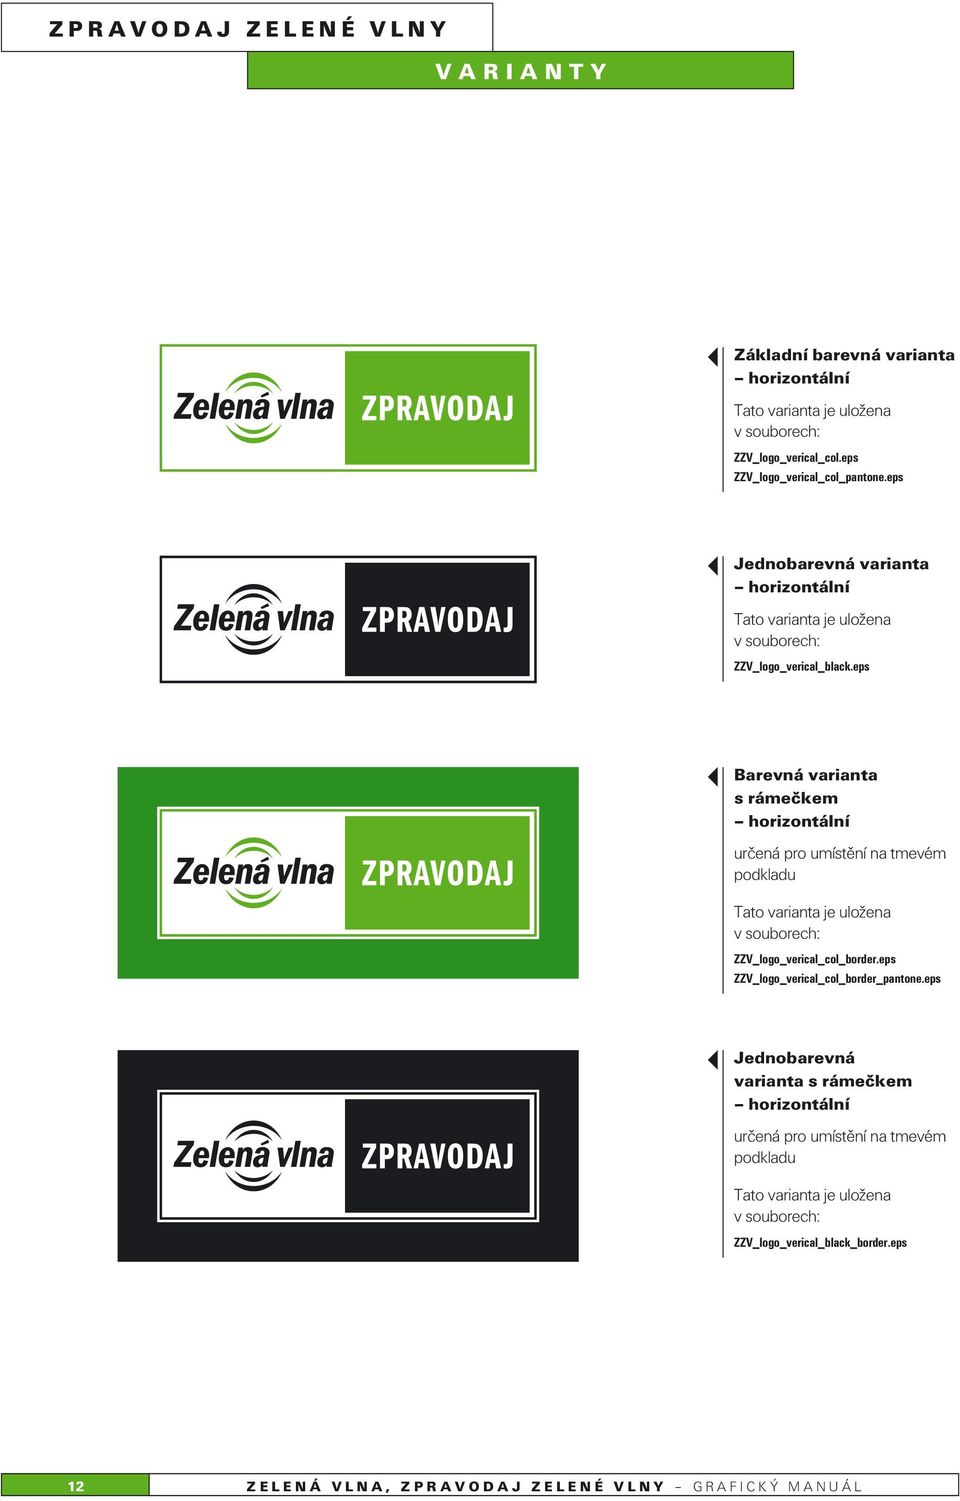 eps Barevná varianta s rámečkem horizontální určená pro umístění na tmevém podkladu ZZV_logo_verical_col_border.